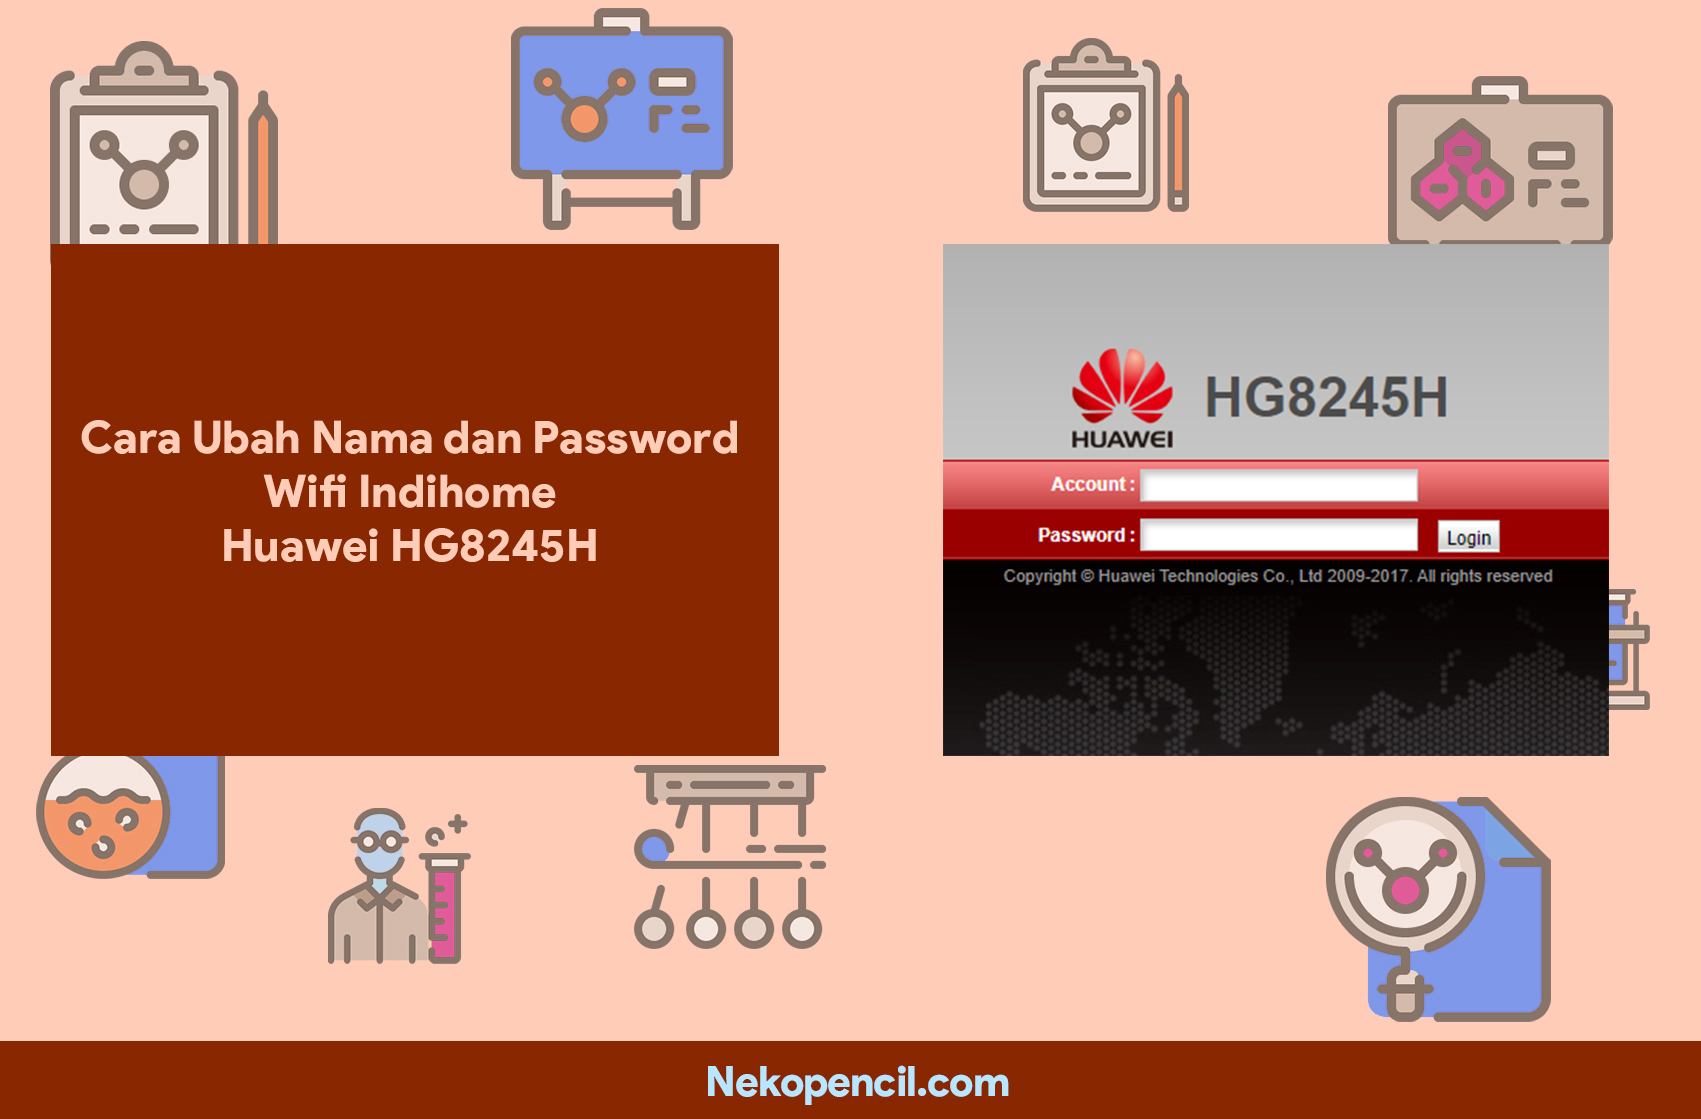 Cara Ubah Nama dan Password Wifi Indihome Huawei HG8245H